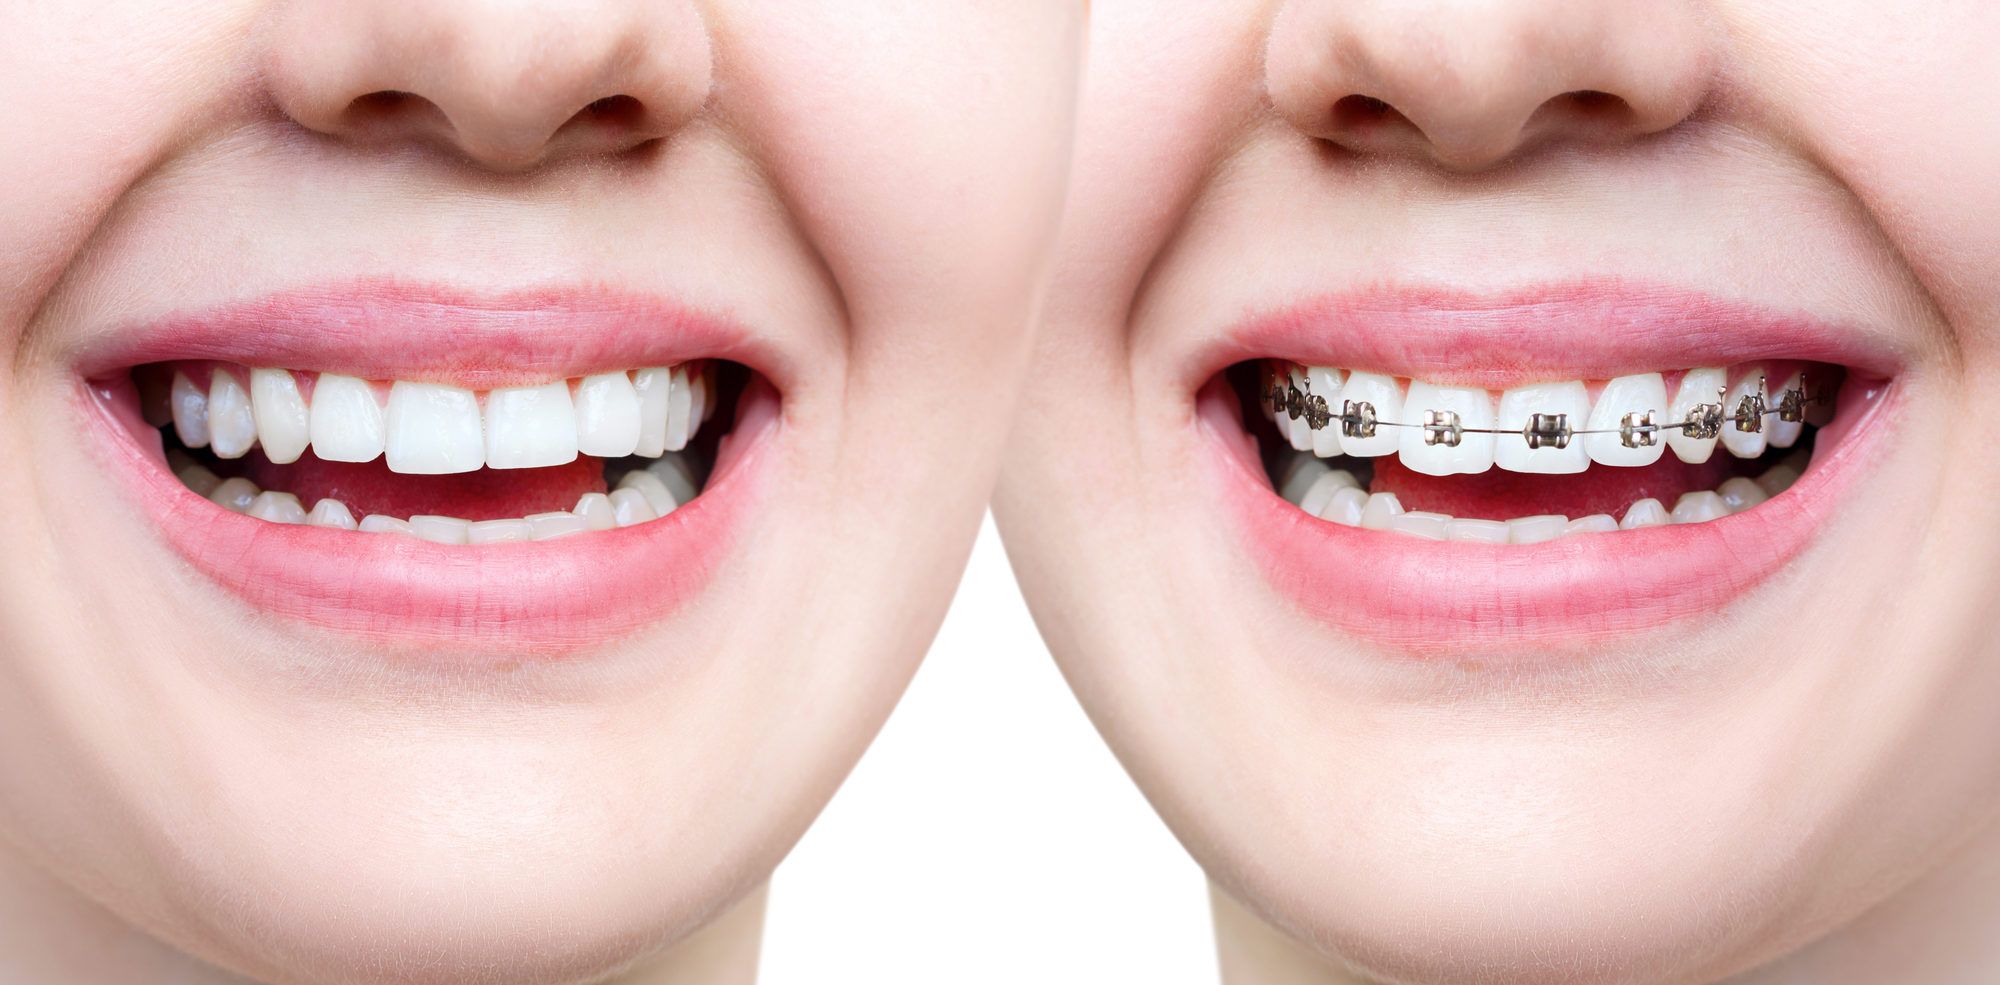 تقويم اسنان للفك العلوي فقط وما هي مدة تقويم الأسنان للفك العلوي؟